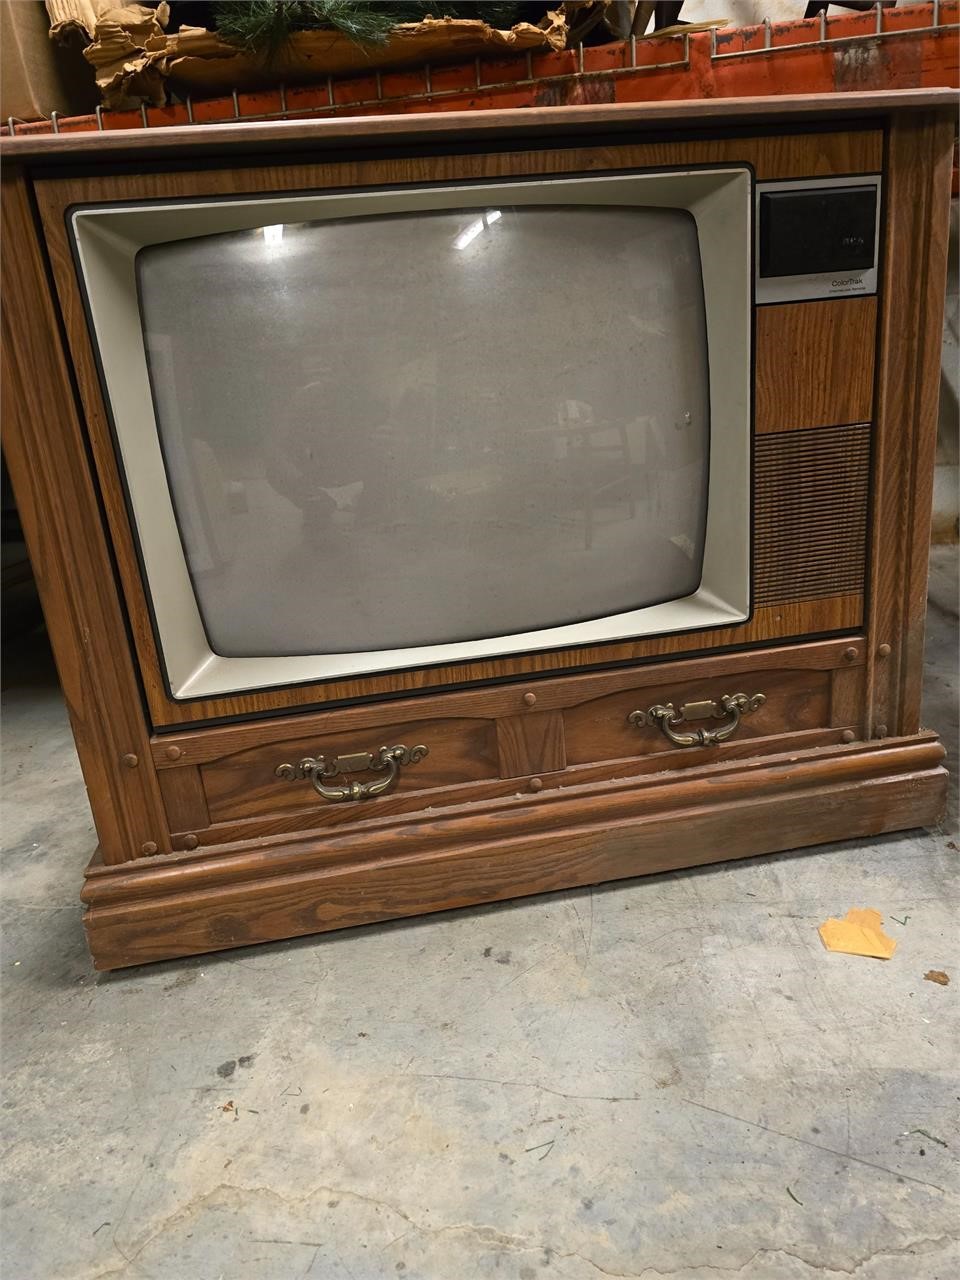 Vintage ColorTrak Television